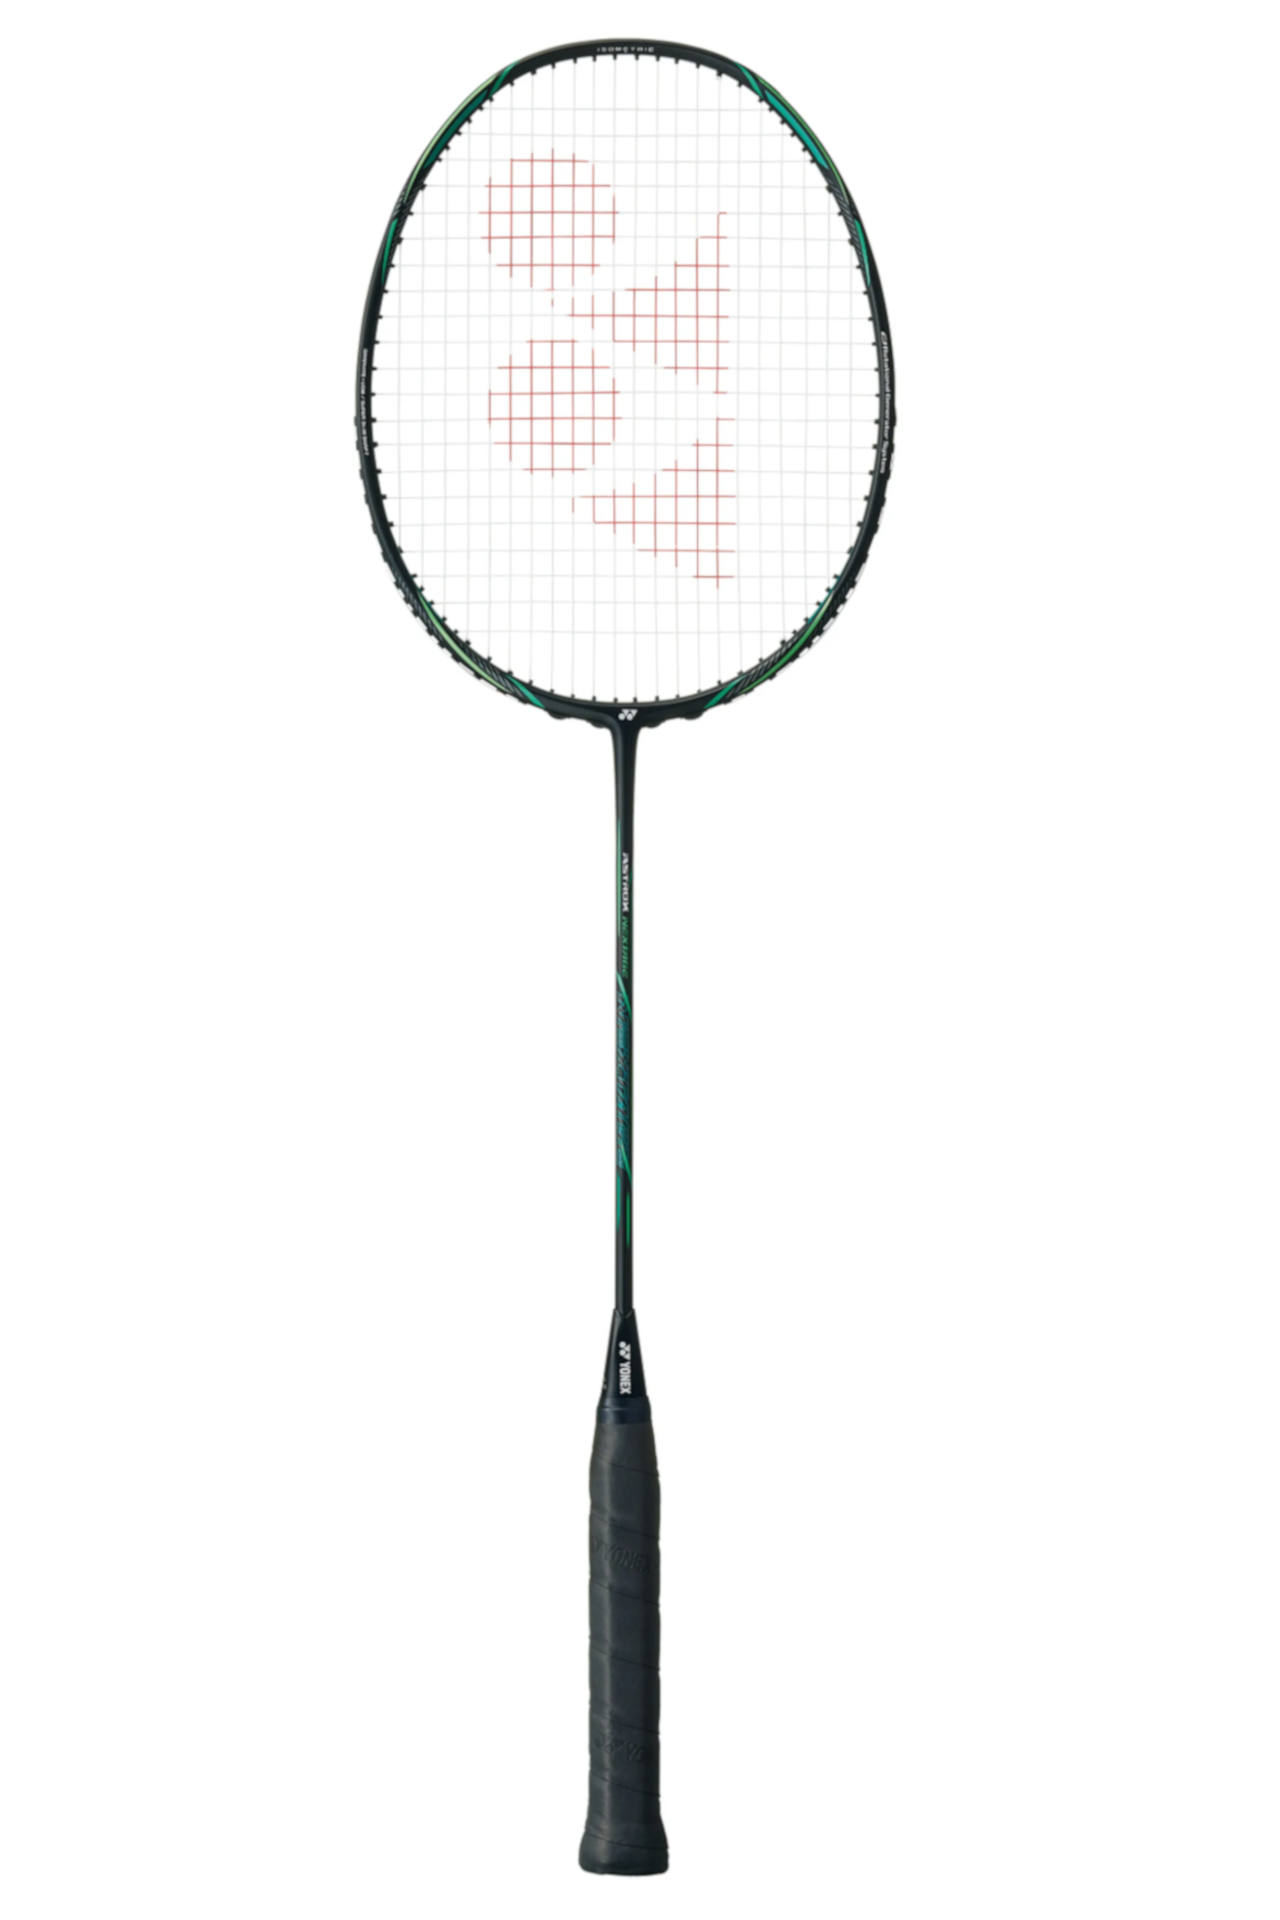 Astrox Nextage (83g / 4uG5)  Badminton Raketi - Siyah/Yeşil | Yonex